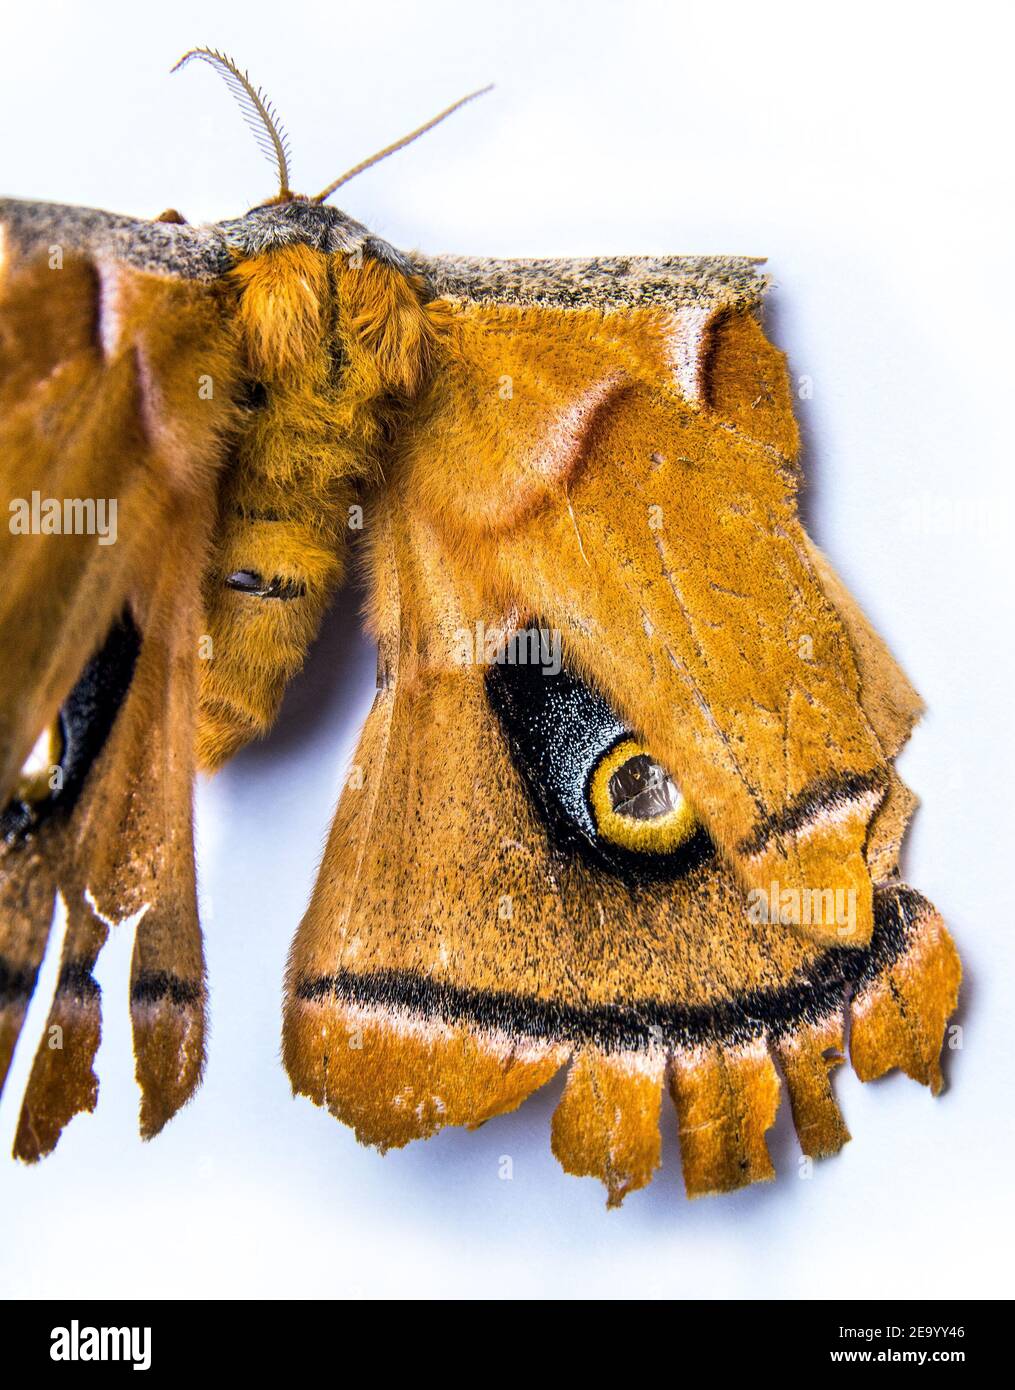 Makrobild des Augenflecks auf dem Flügel der Motte. Motte mit einer gefälschten Augenmarkierung auf seinem Flügel wird Raubtiere verwirren. Stockfoto